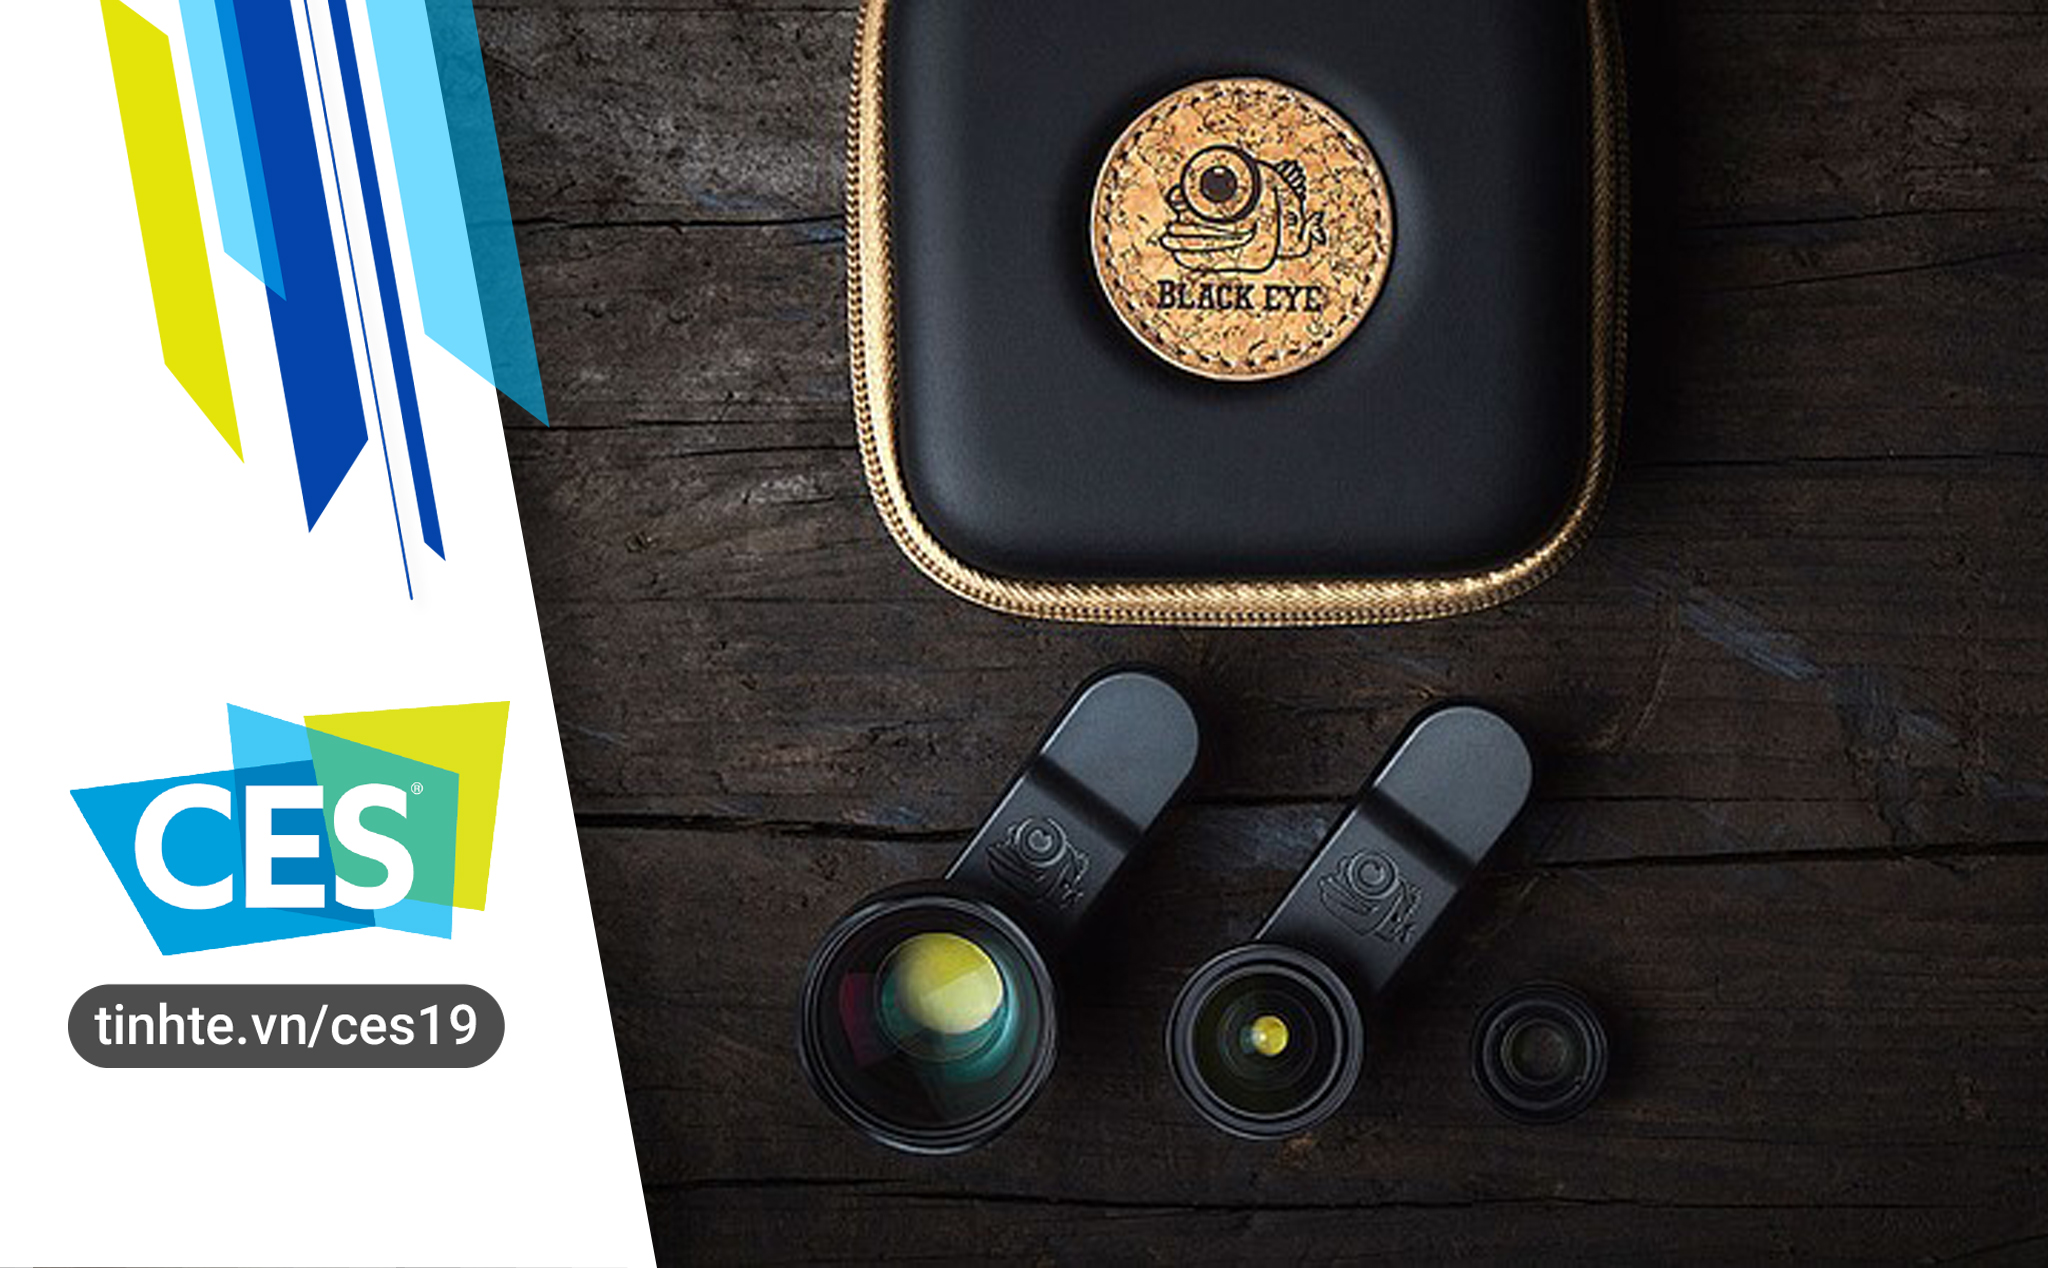 #CES19: Black Eye ra mắt bộ ống kính chuyên nghiệp thế hệ thứ 4 sử dụng cho điện thoại